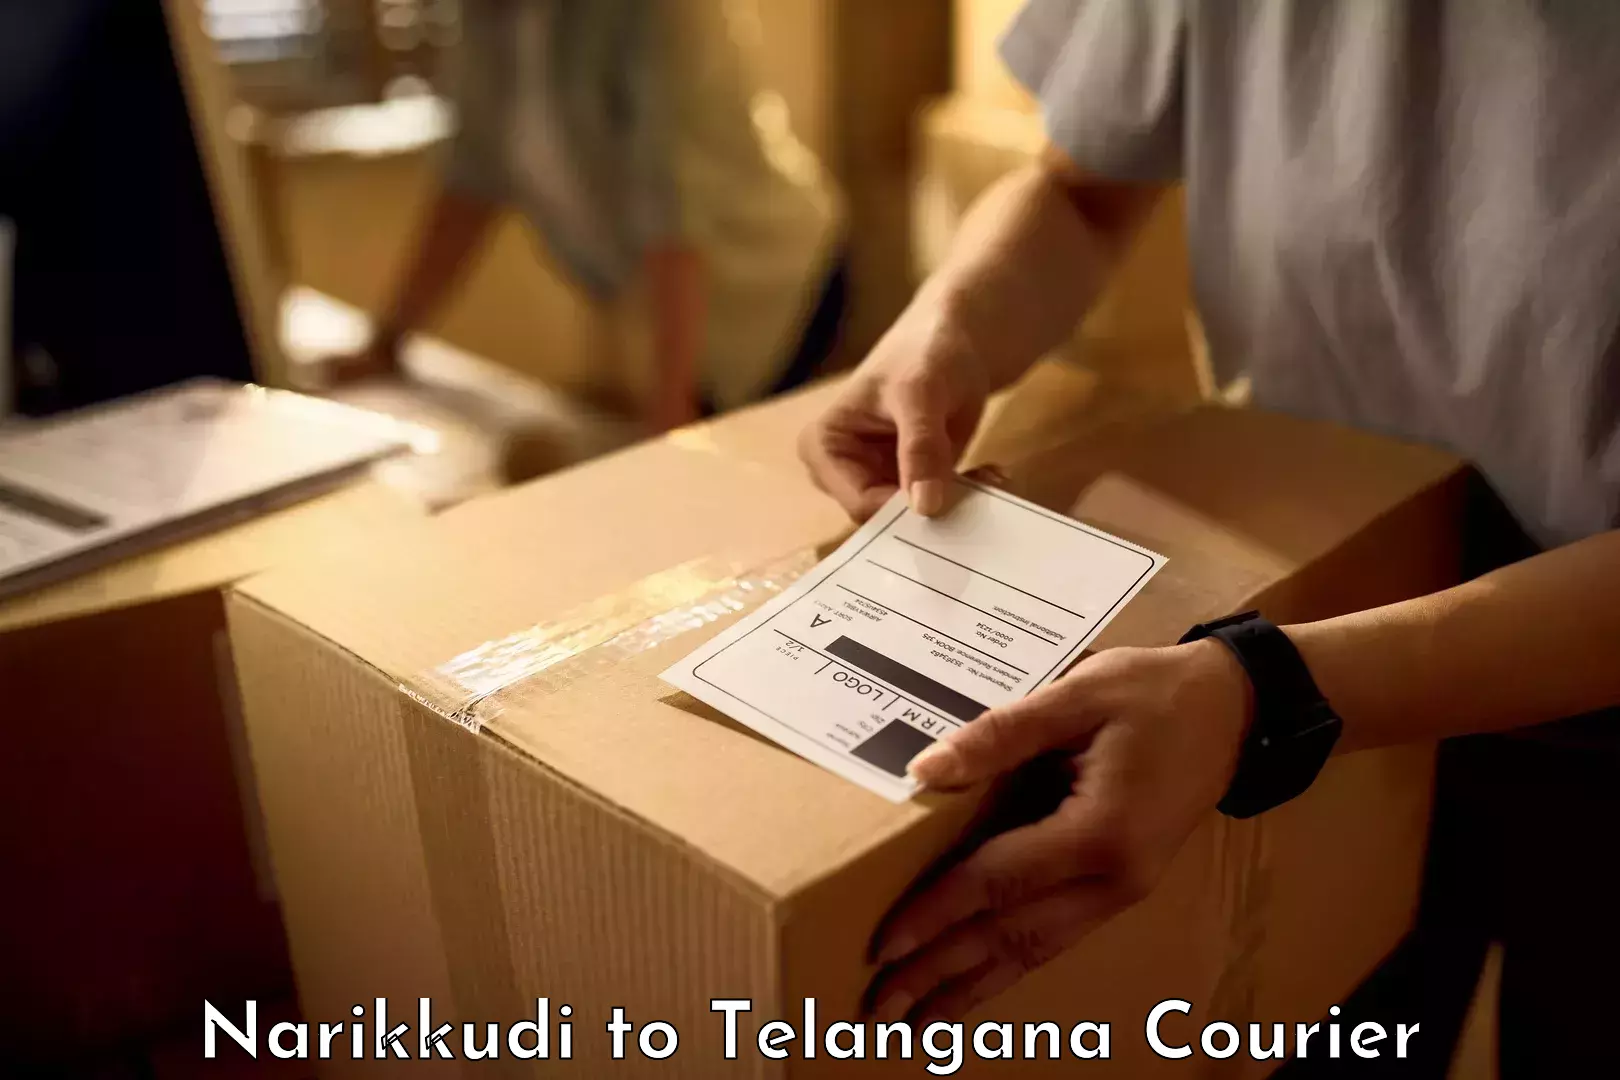 Luggage shipping estimate Narikkudi to Warangal